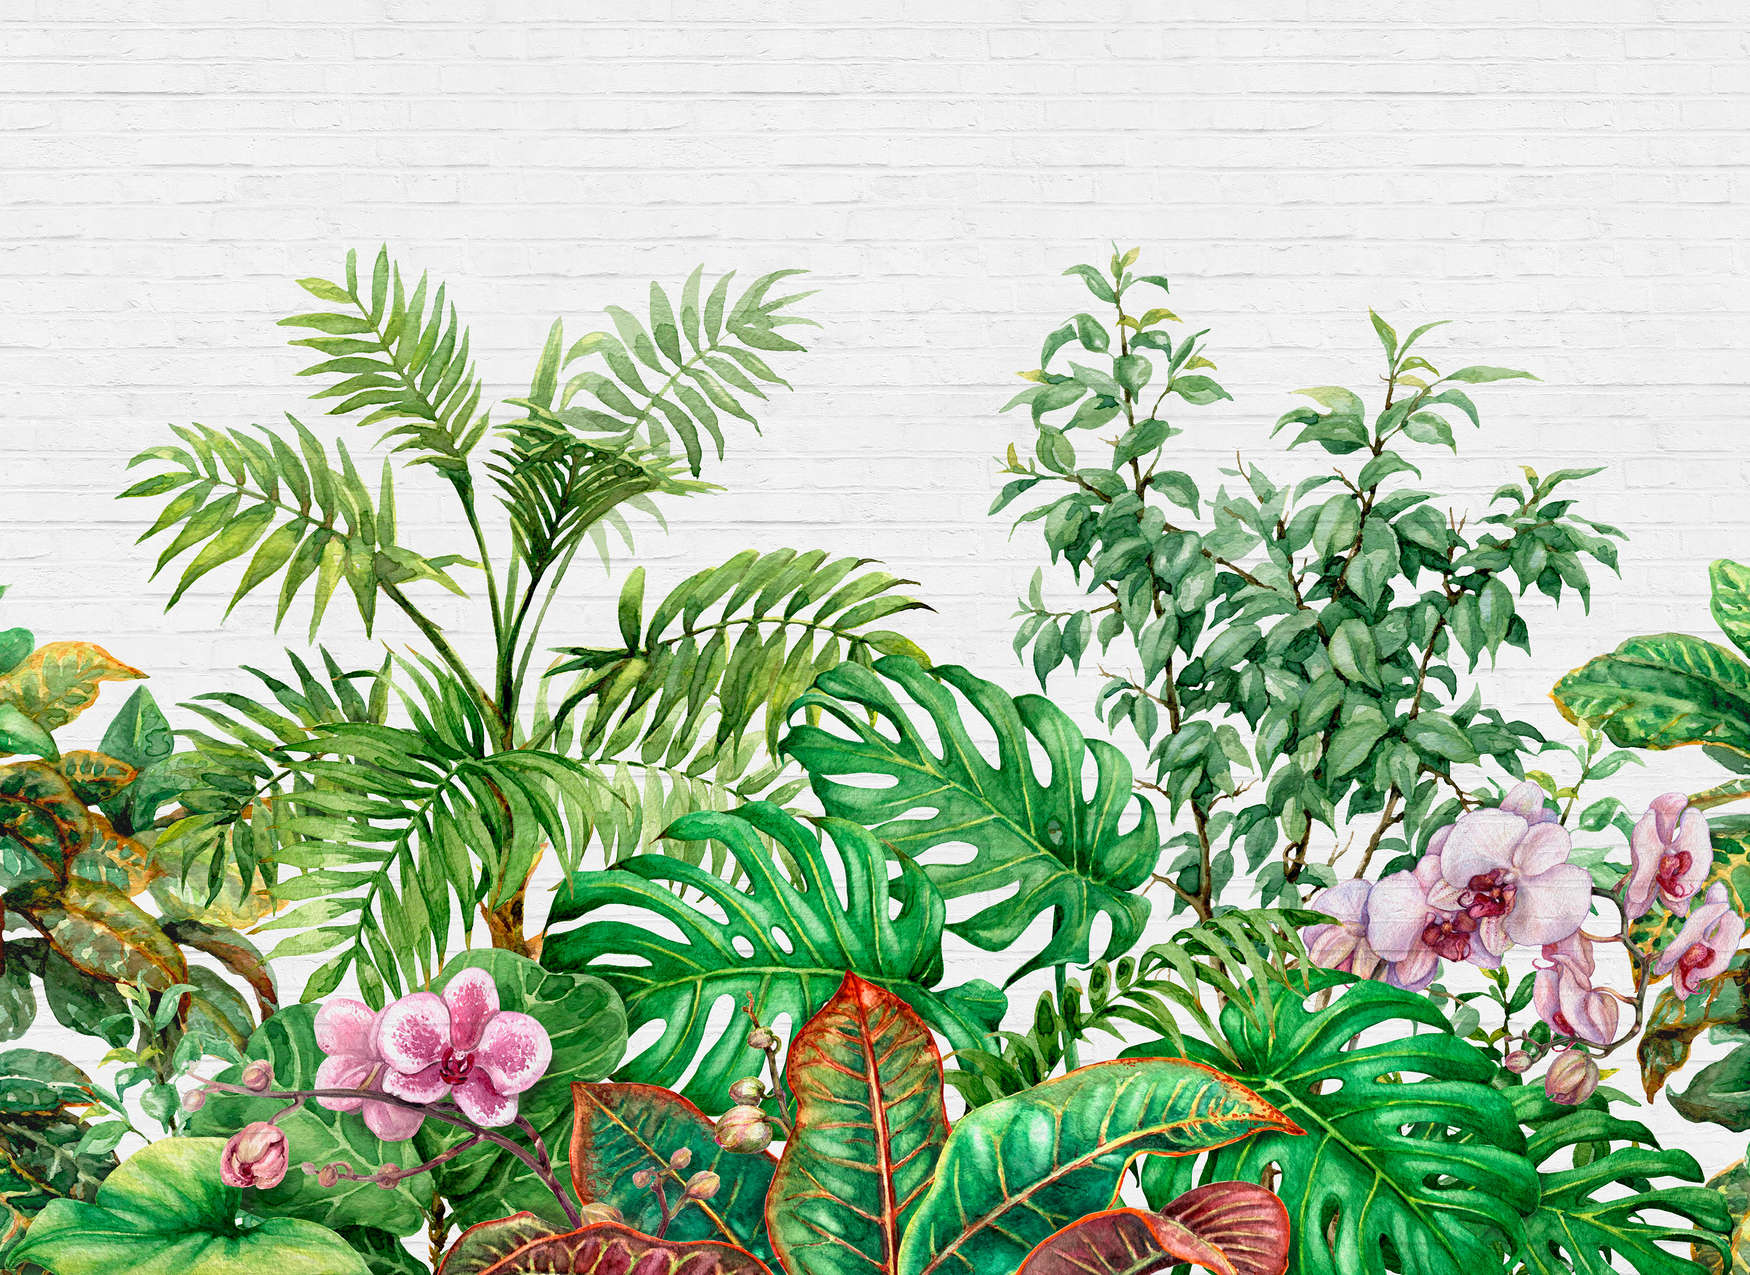             Mauermotiv mit Dschungelblättern – Grün, Weiß, Rosa
        